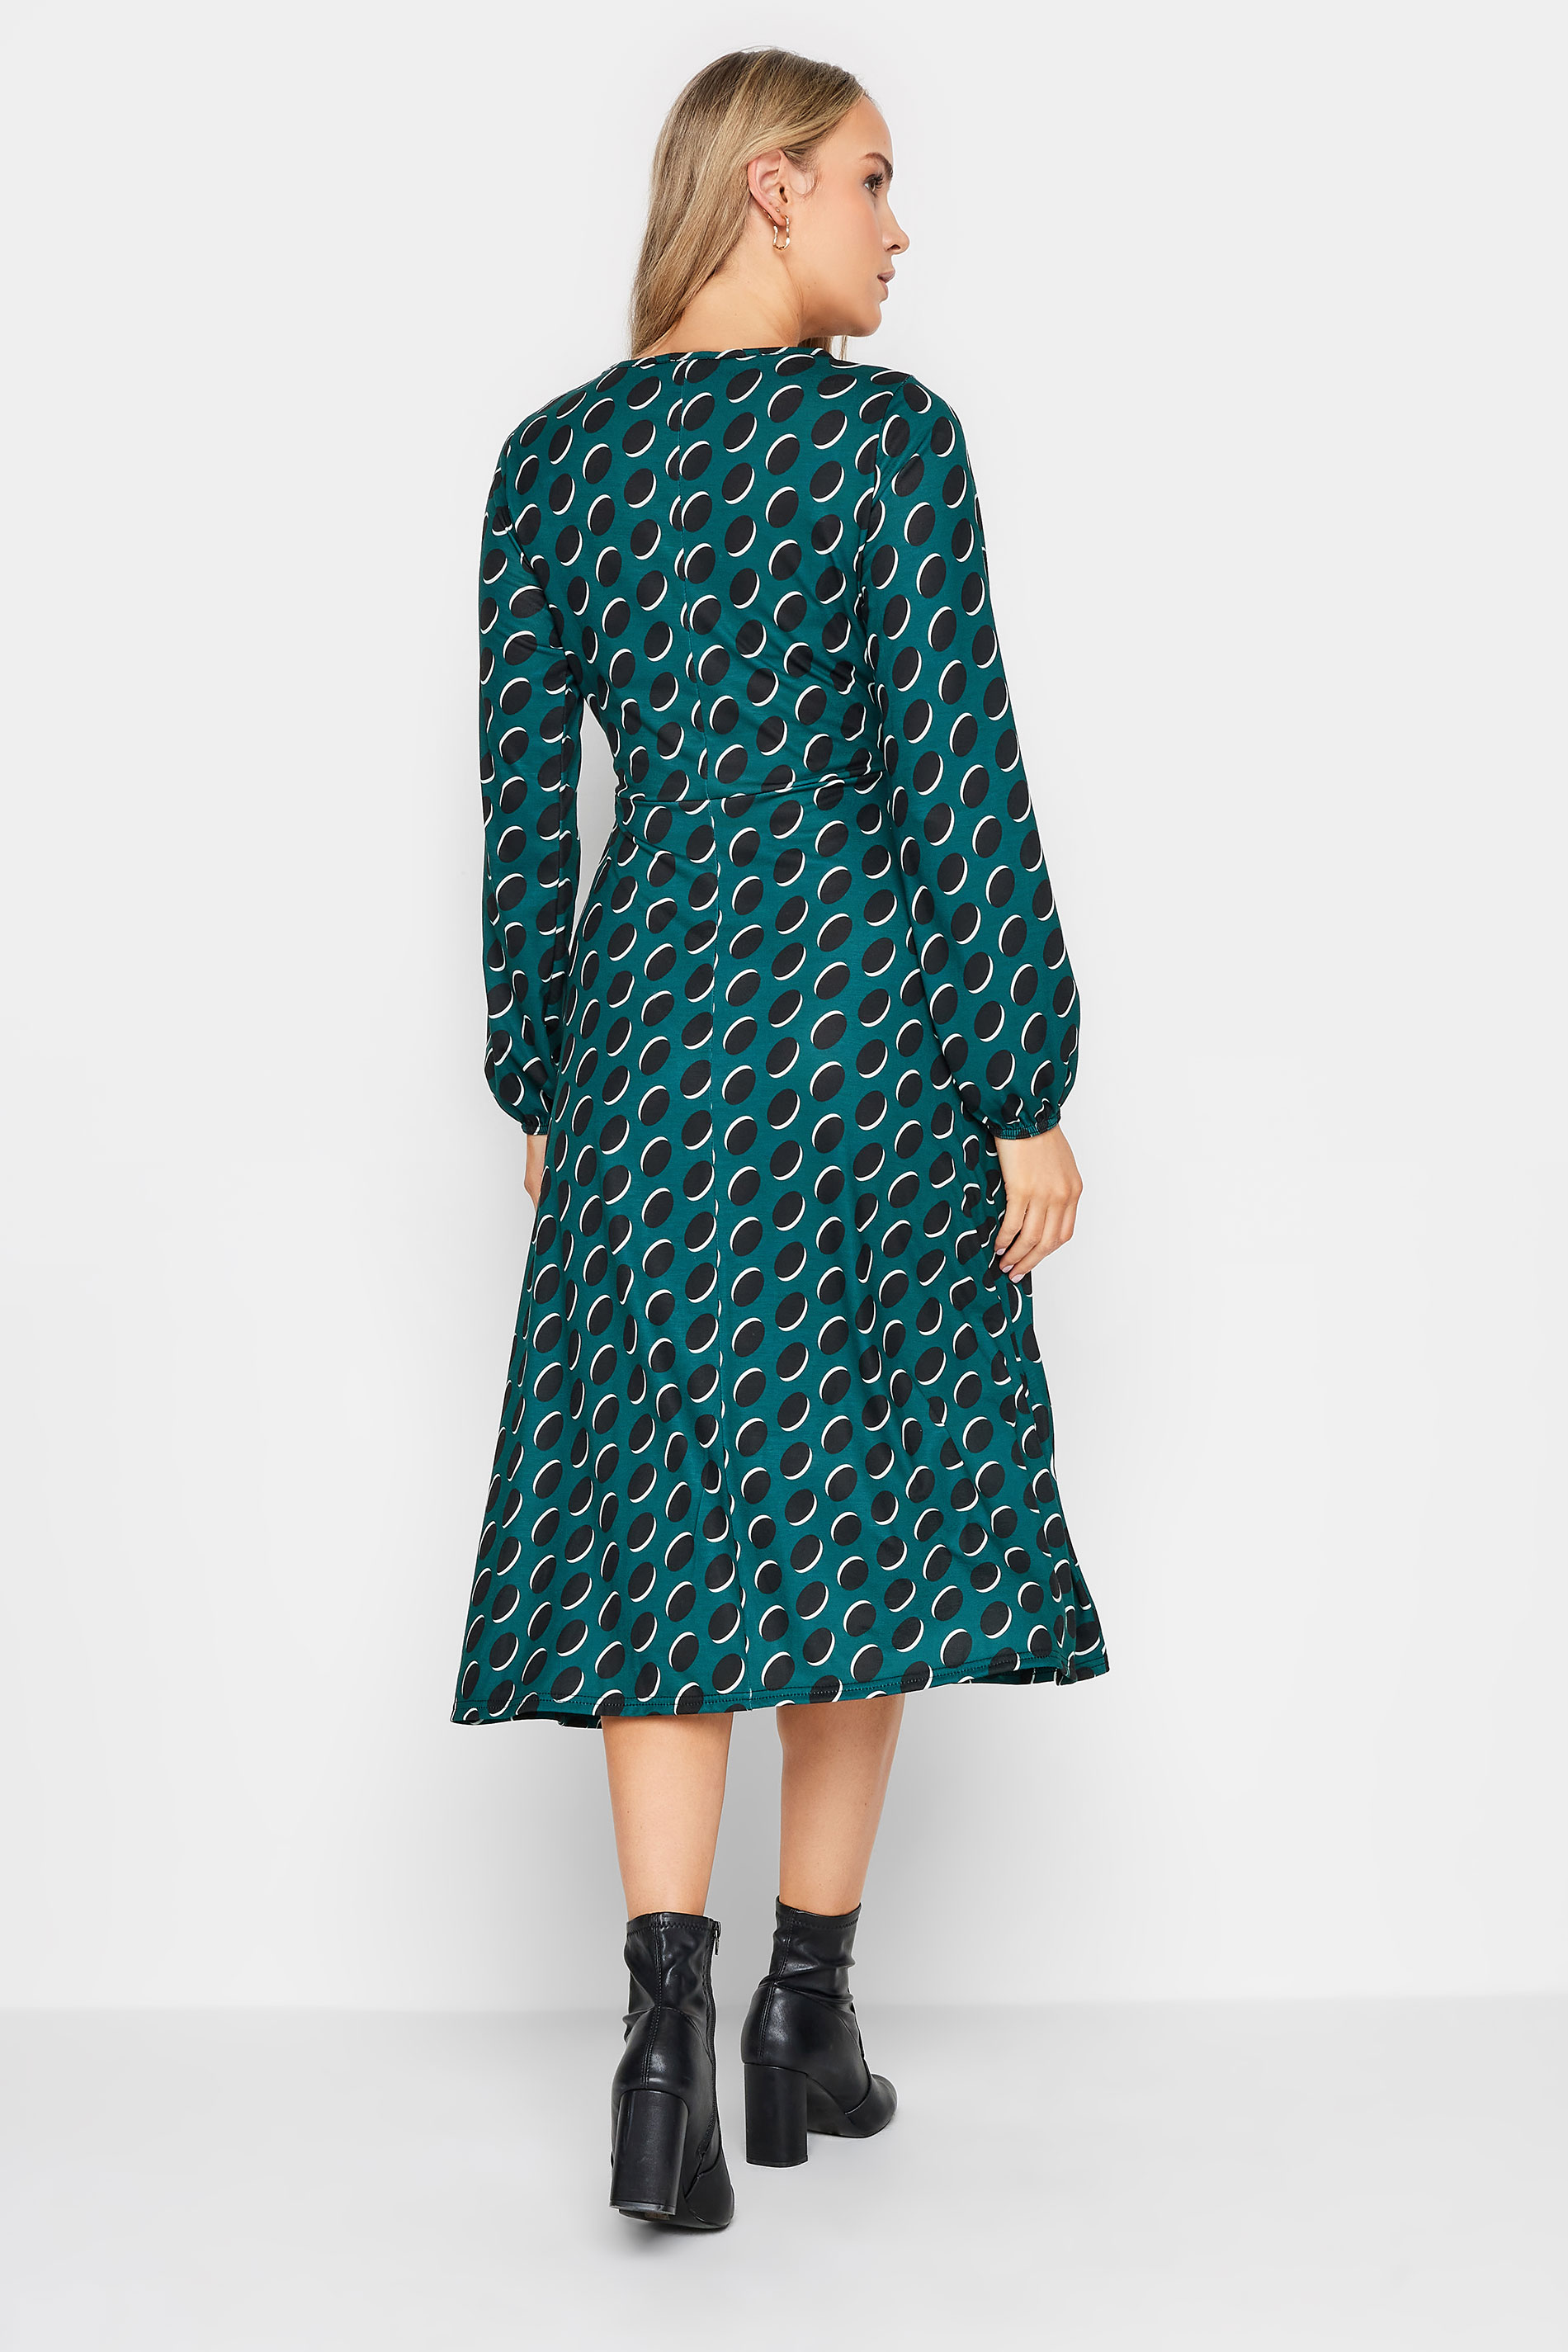 LTS Tall Womens Dark Green Spot Print Midi Dress | Long Tall Sally 3